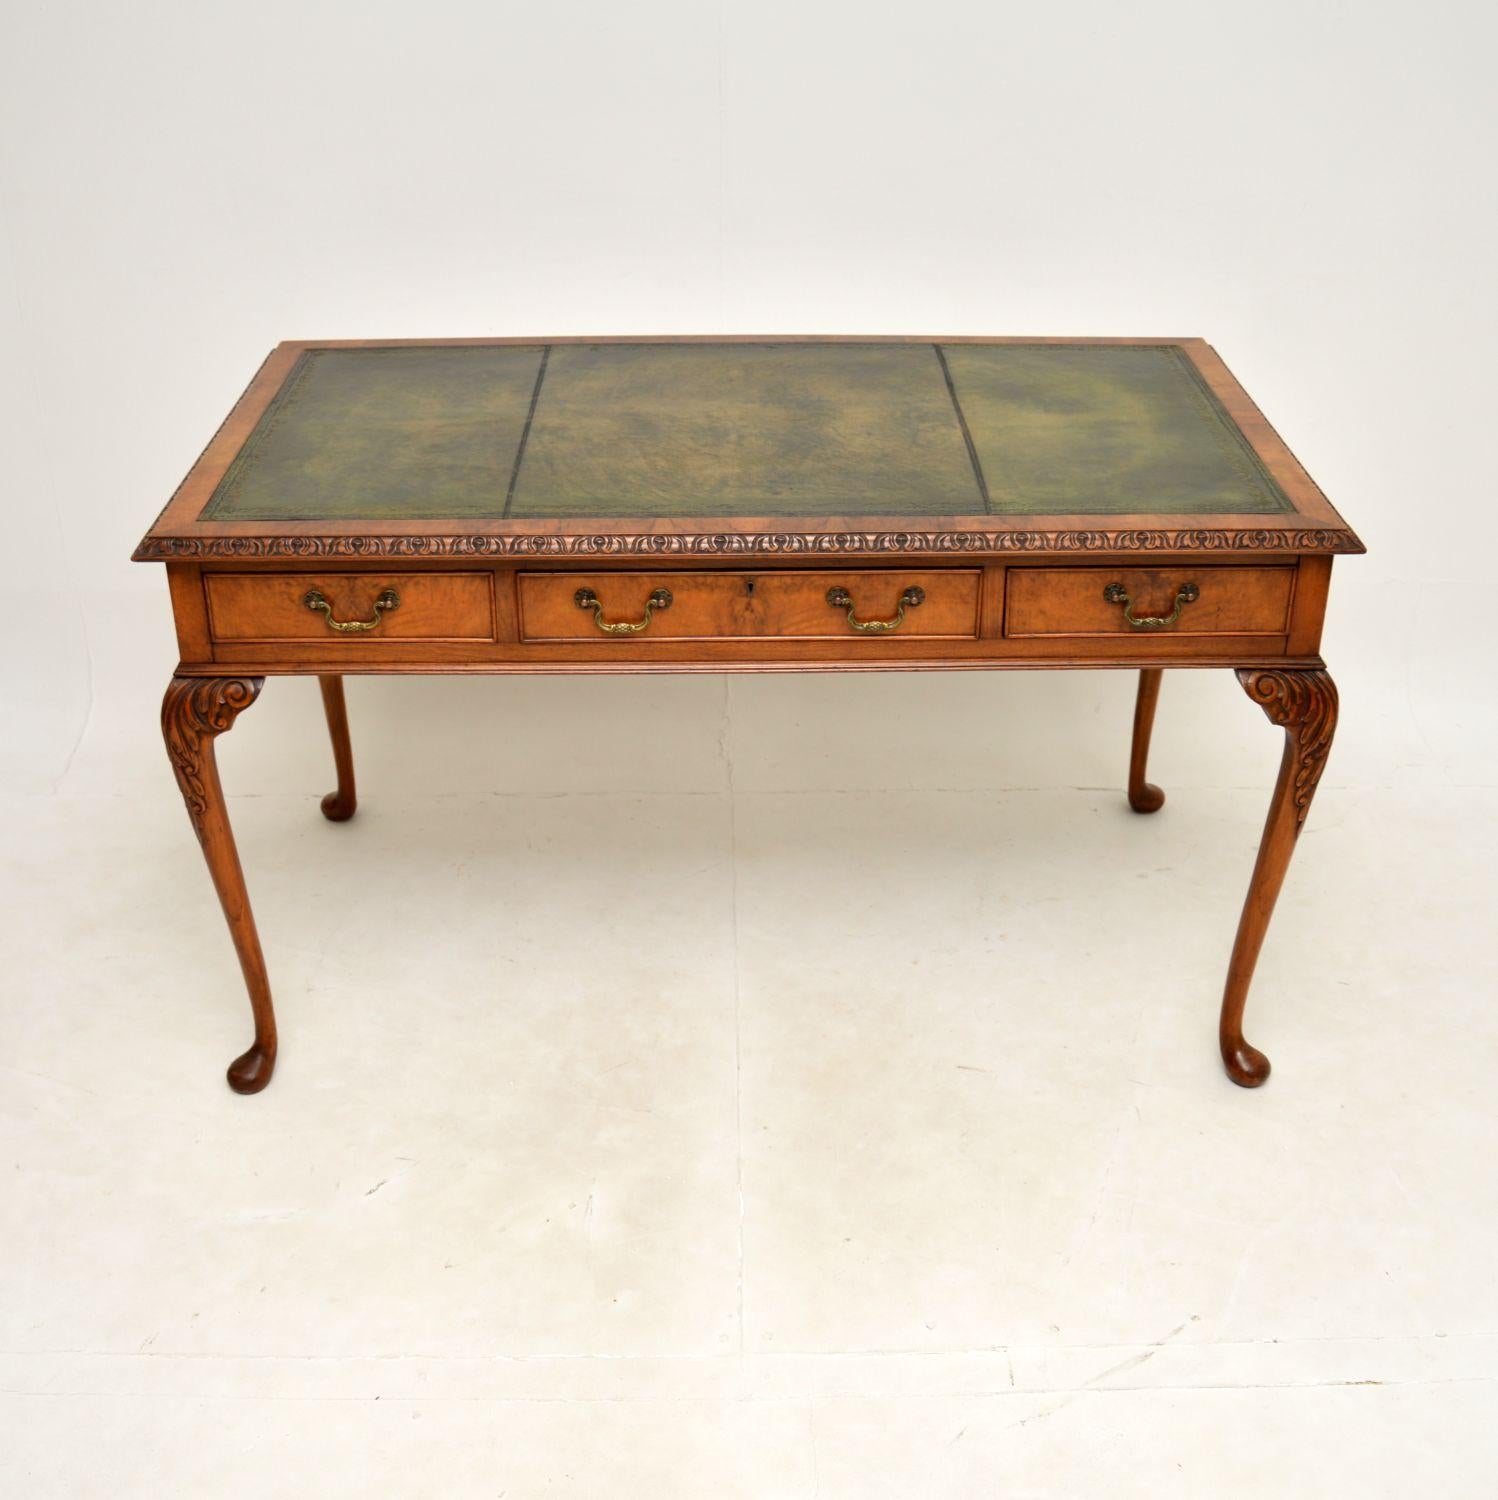 Eine atemberaubende antike Gratnussbaum Lederplatte Schreibtisch / Schreibtisch. Es ist im Queen-Anne-Stil gehalten, wurde in England hergestellt und stammt aus der Zeit zwischen 1900 und 1920.

Er ist von hervorragender Qualität und hat eine gute